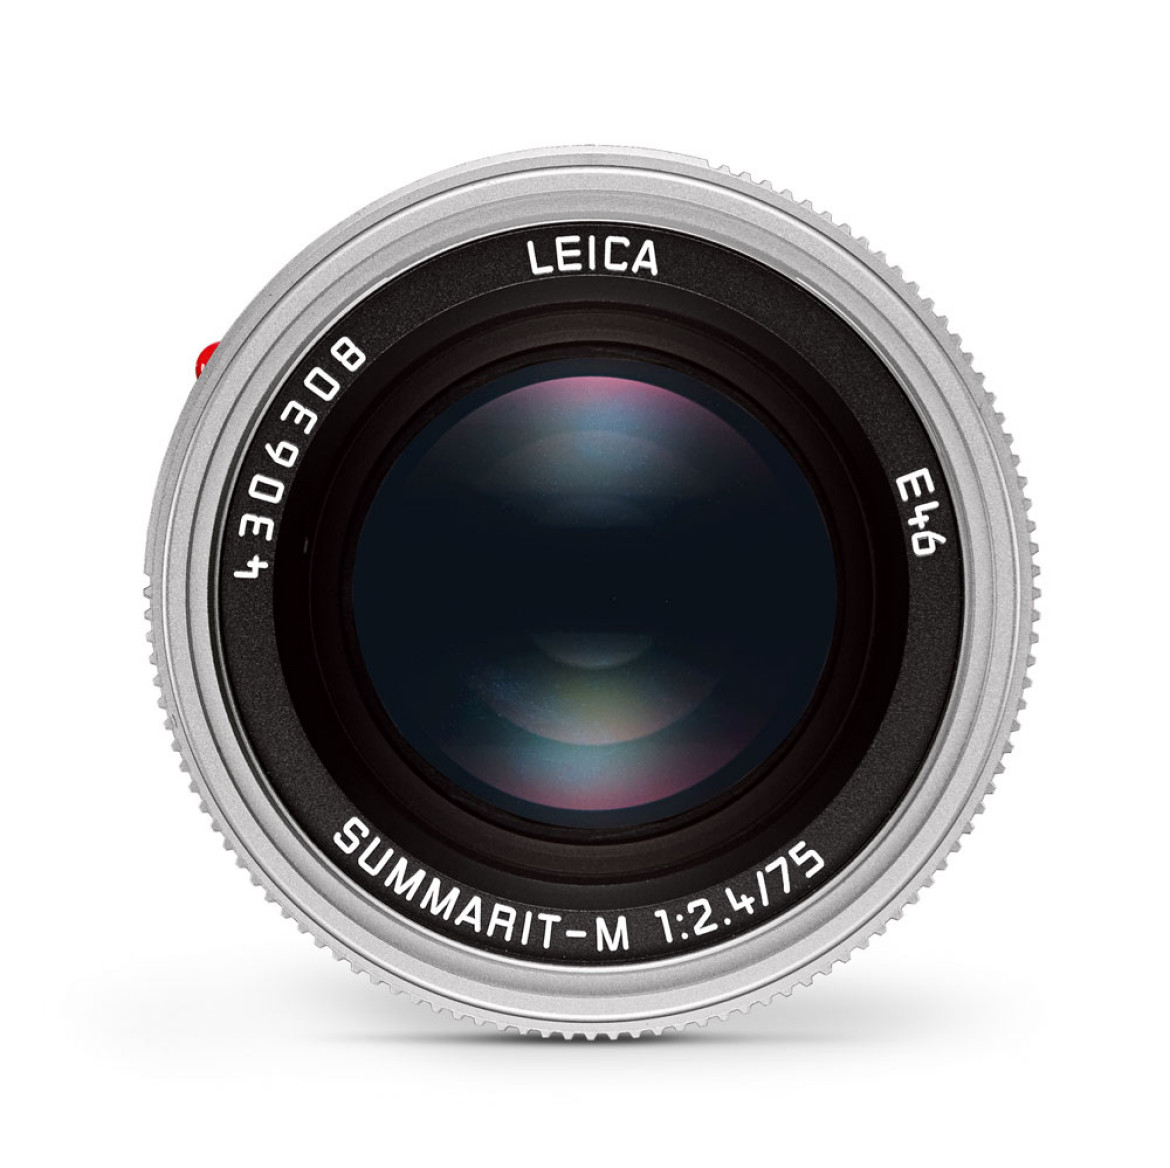 Leica Summarit-M 75 mm f/2.4 Silver